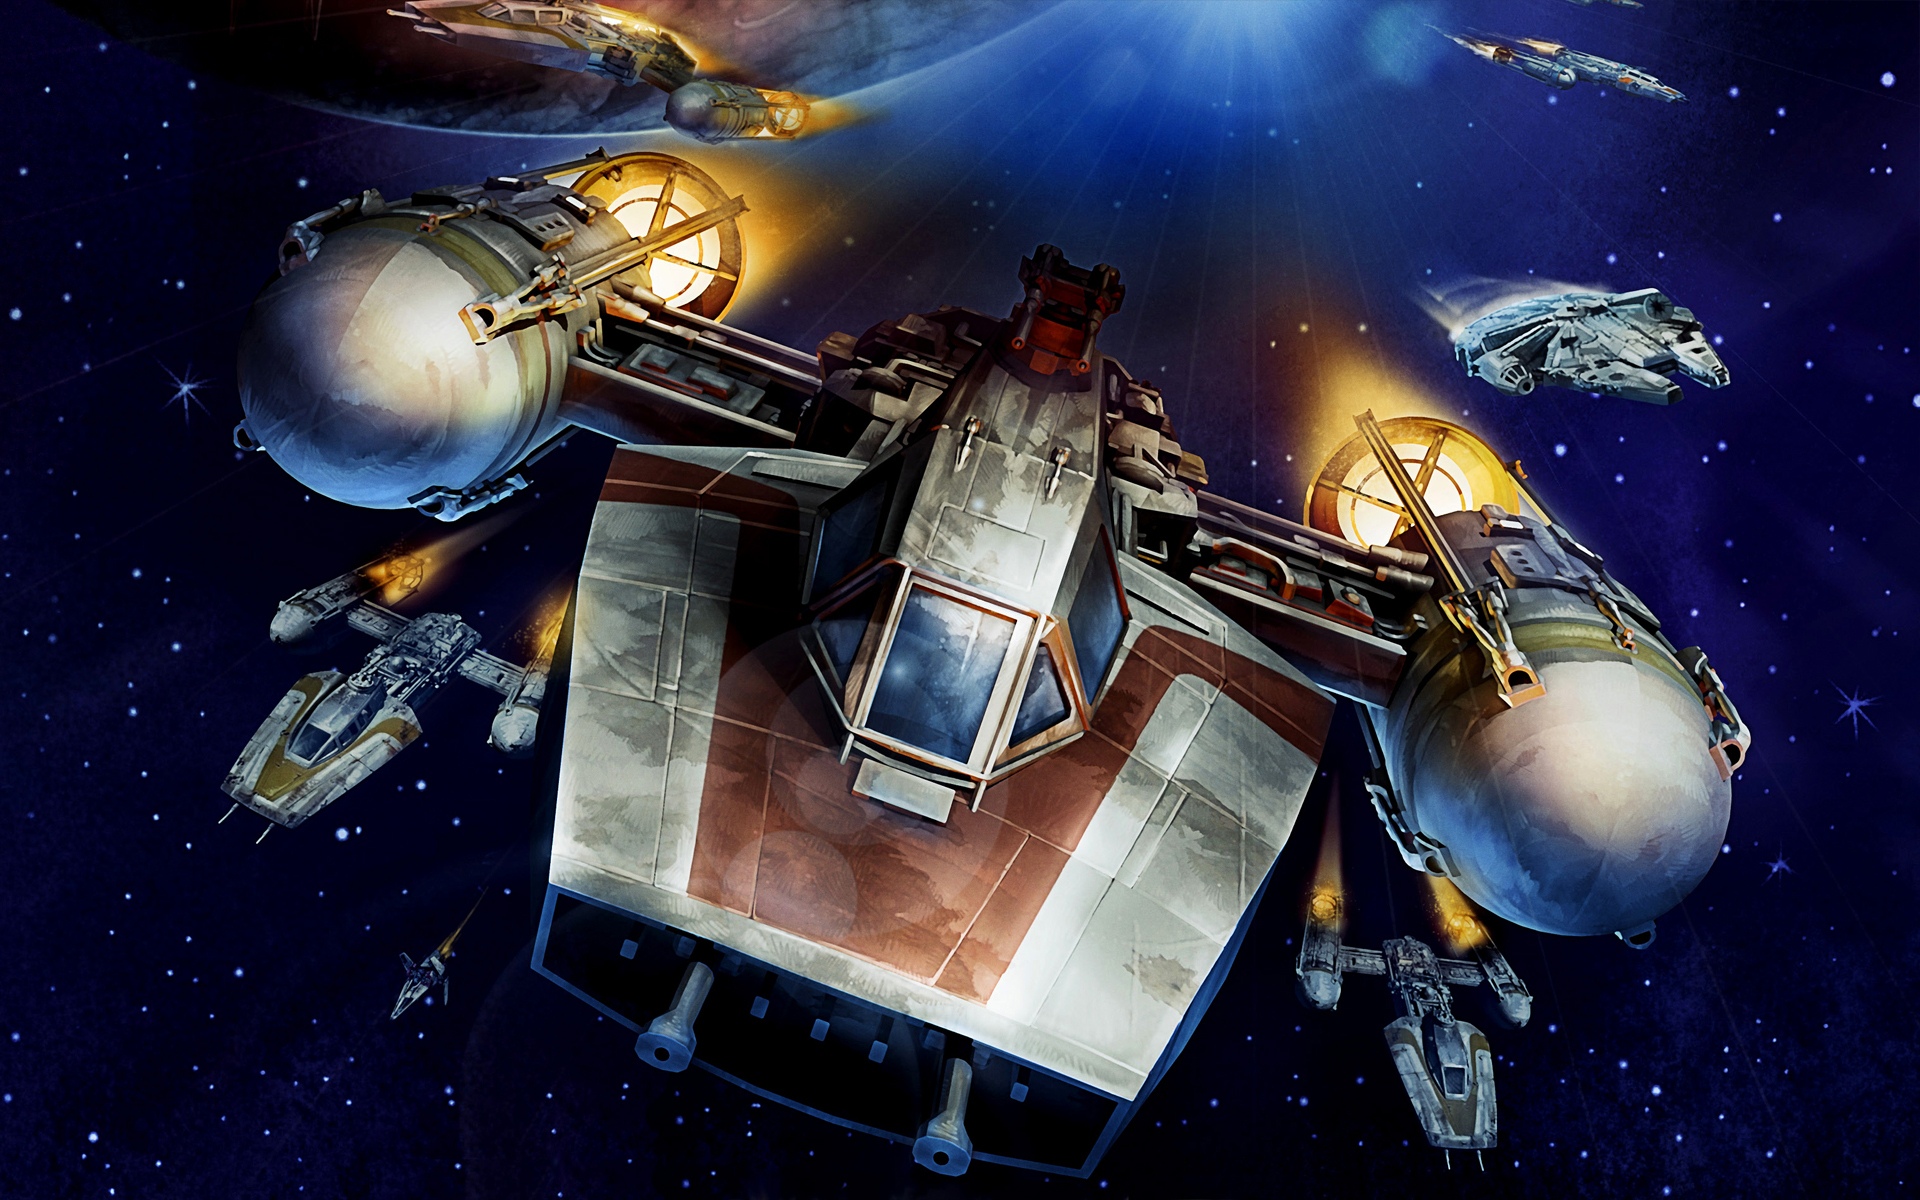 General 1920x1200 Star Wars artwork space spaceship Y-Wing digital art Star Wars Ships